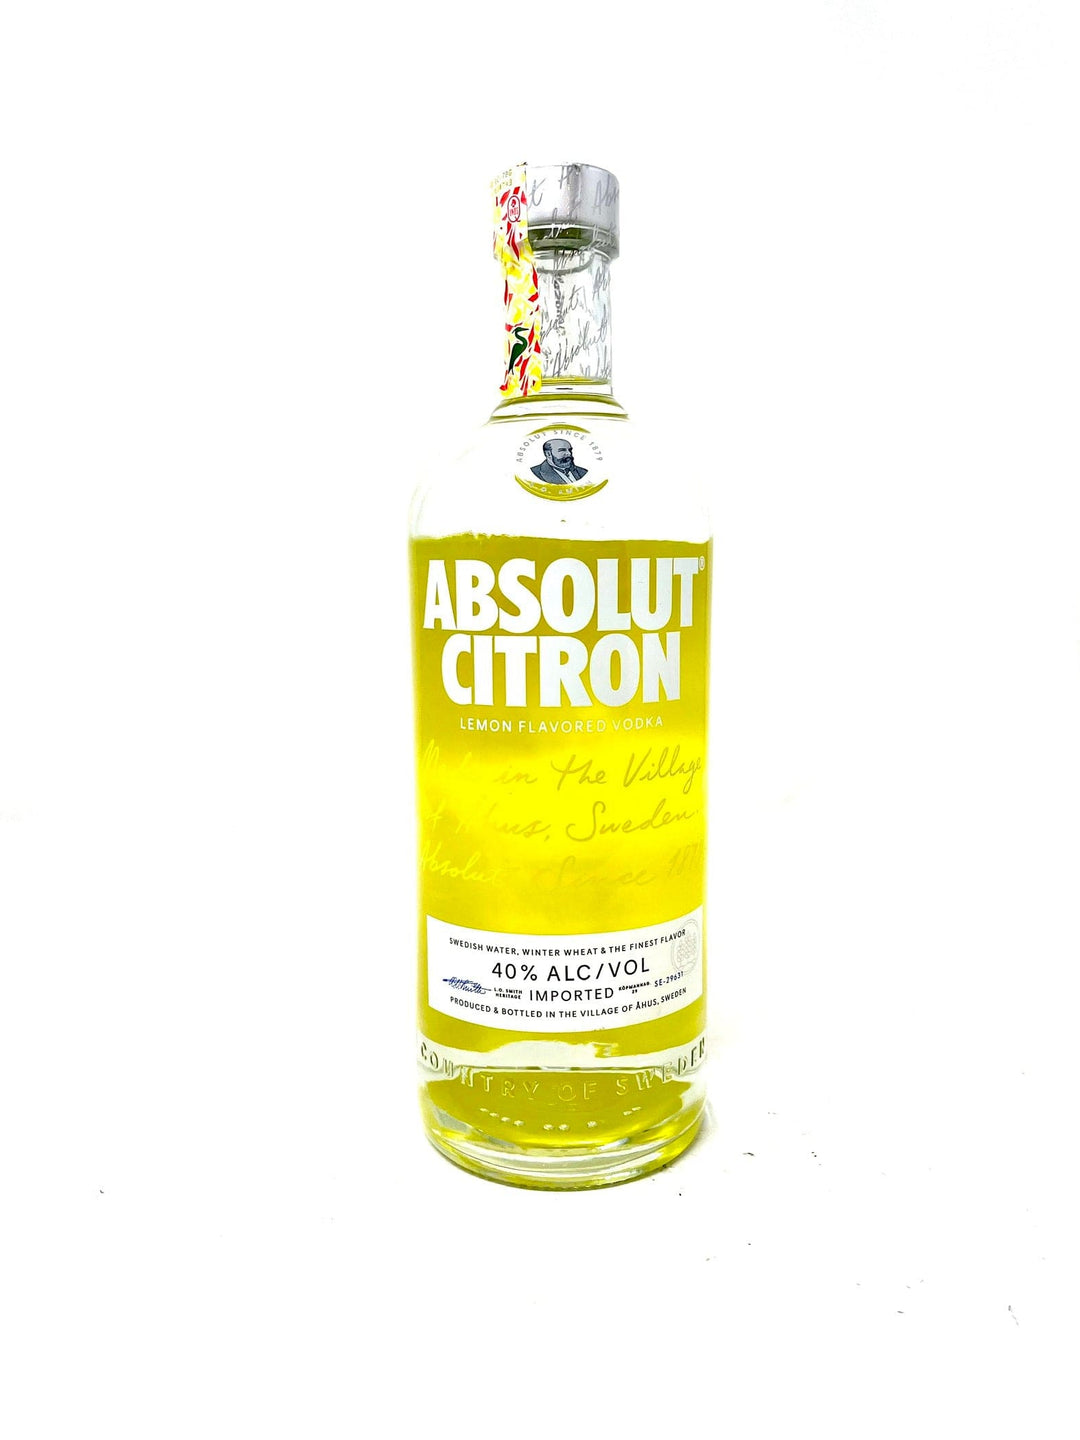 Absolut Vodka Citron 1L